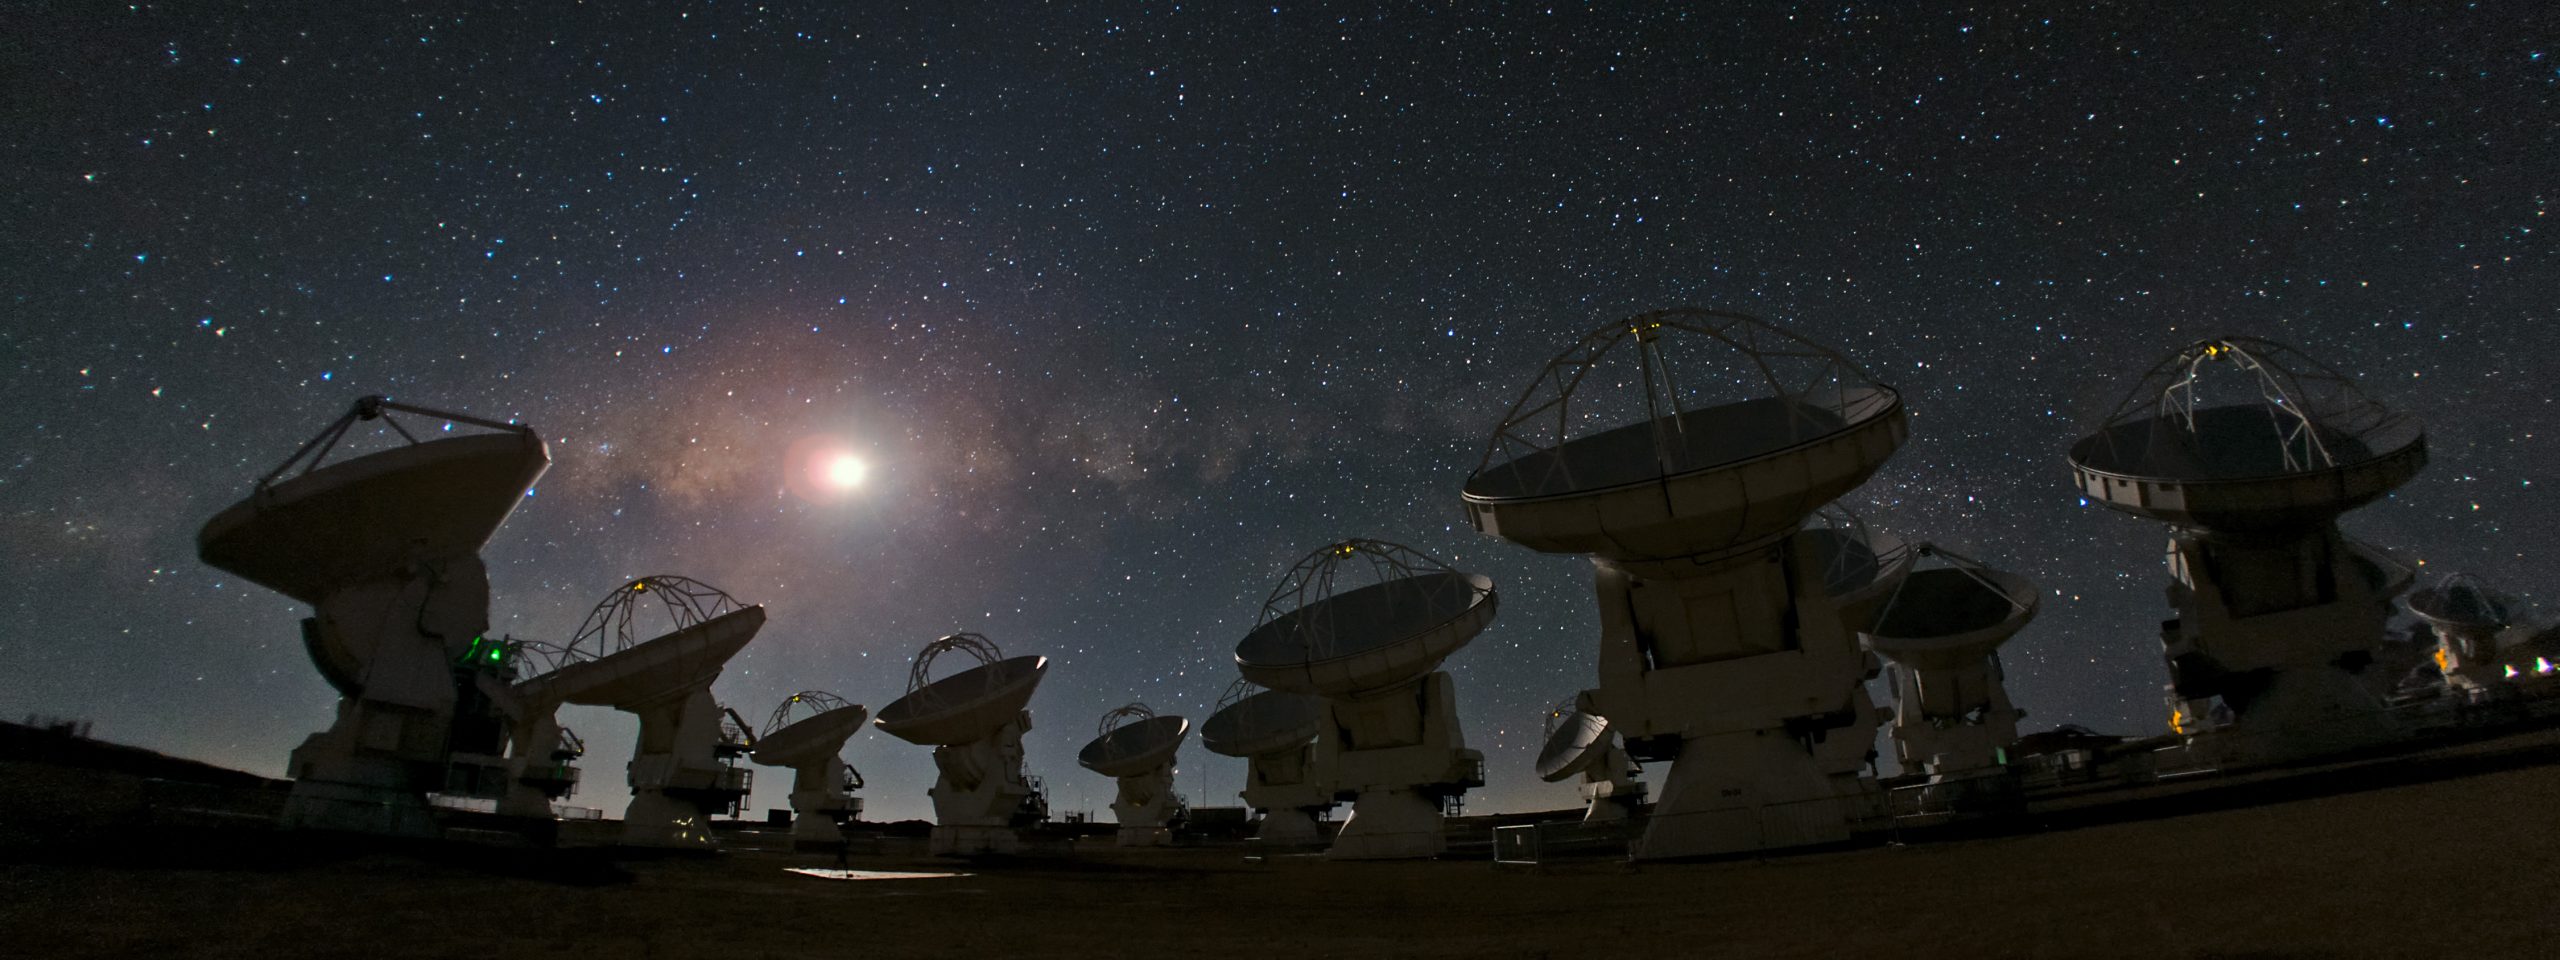 El Atacama Large Millimeter/submillimeter Array (ALMA), una asociación internacional entre Europa, Norteamérica y Asia del Este, en colaboración con la República de Chile, es el mayor proyecto astronómico del mundo.